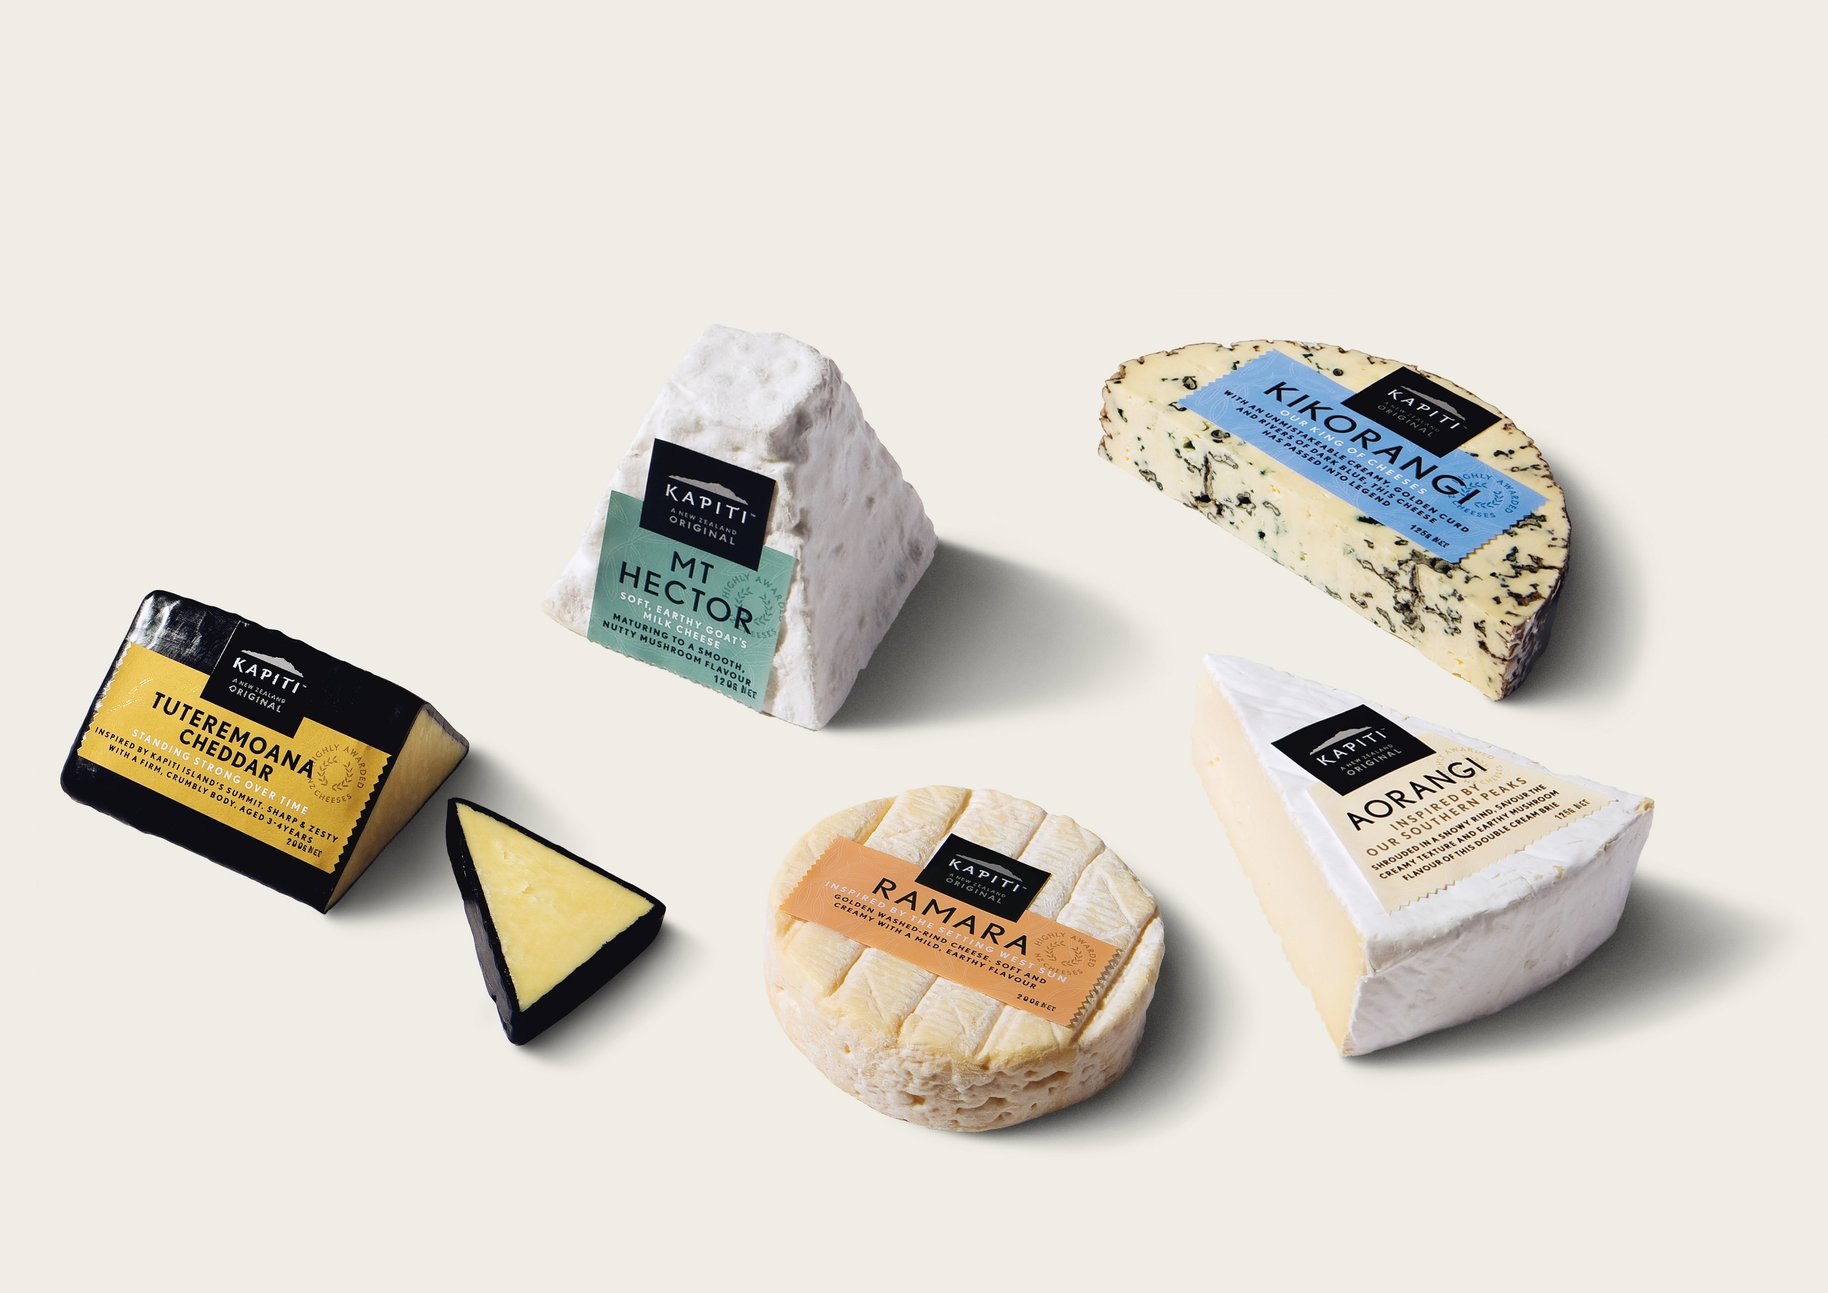 Kapiti cheese range packaging 